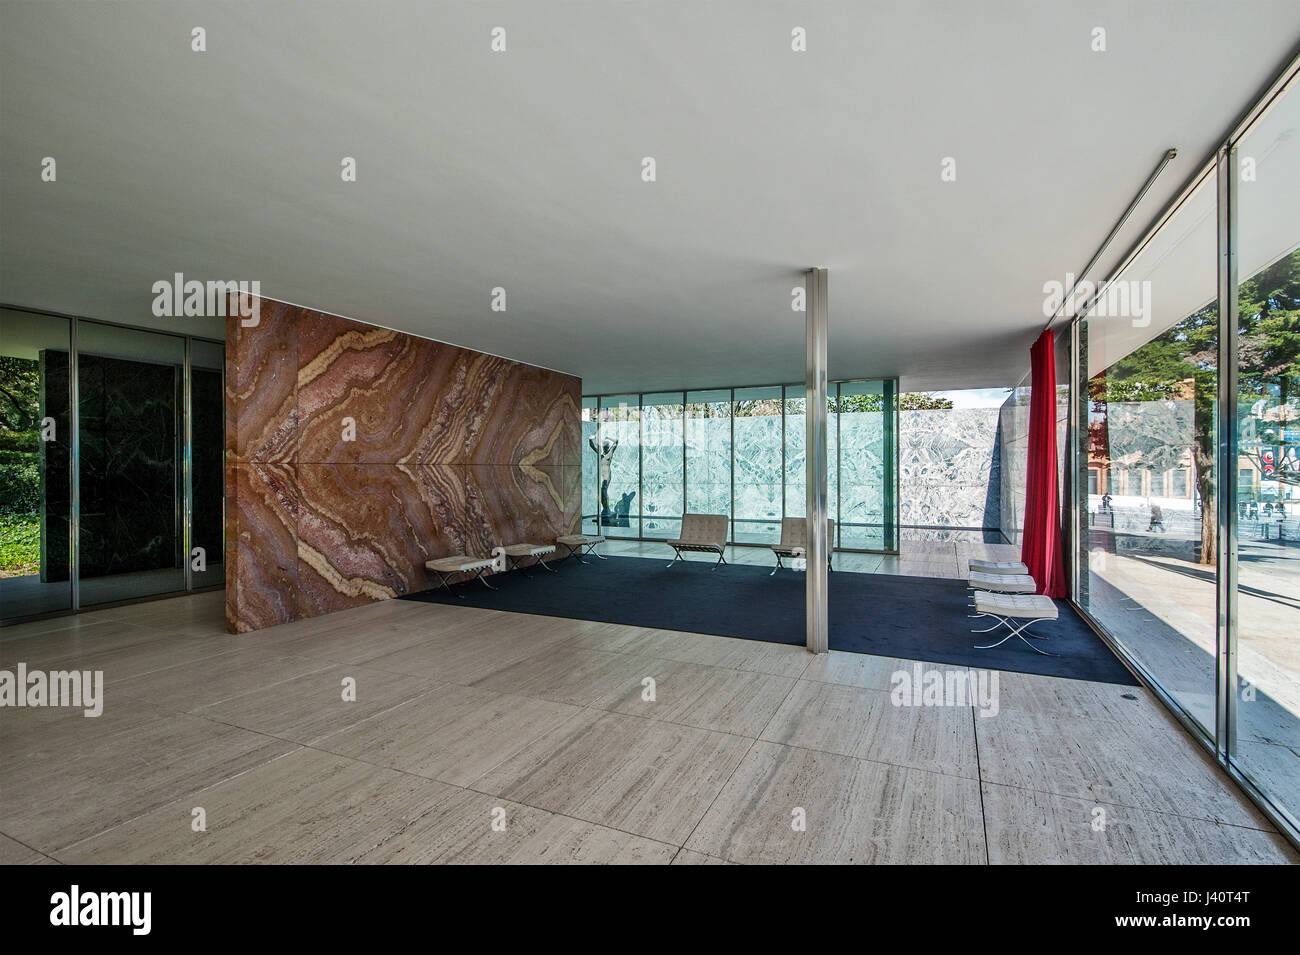 Pavillon Mies van der Rohe des deutschen Architekten Ludwig Mies van der  Rohe im Bauhaus-Stil mit den Barcelona-Stühlen Stockfotografie - Alamy